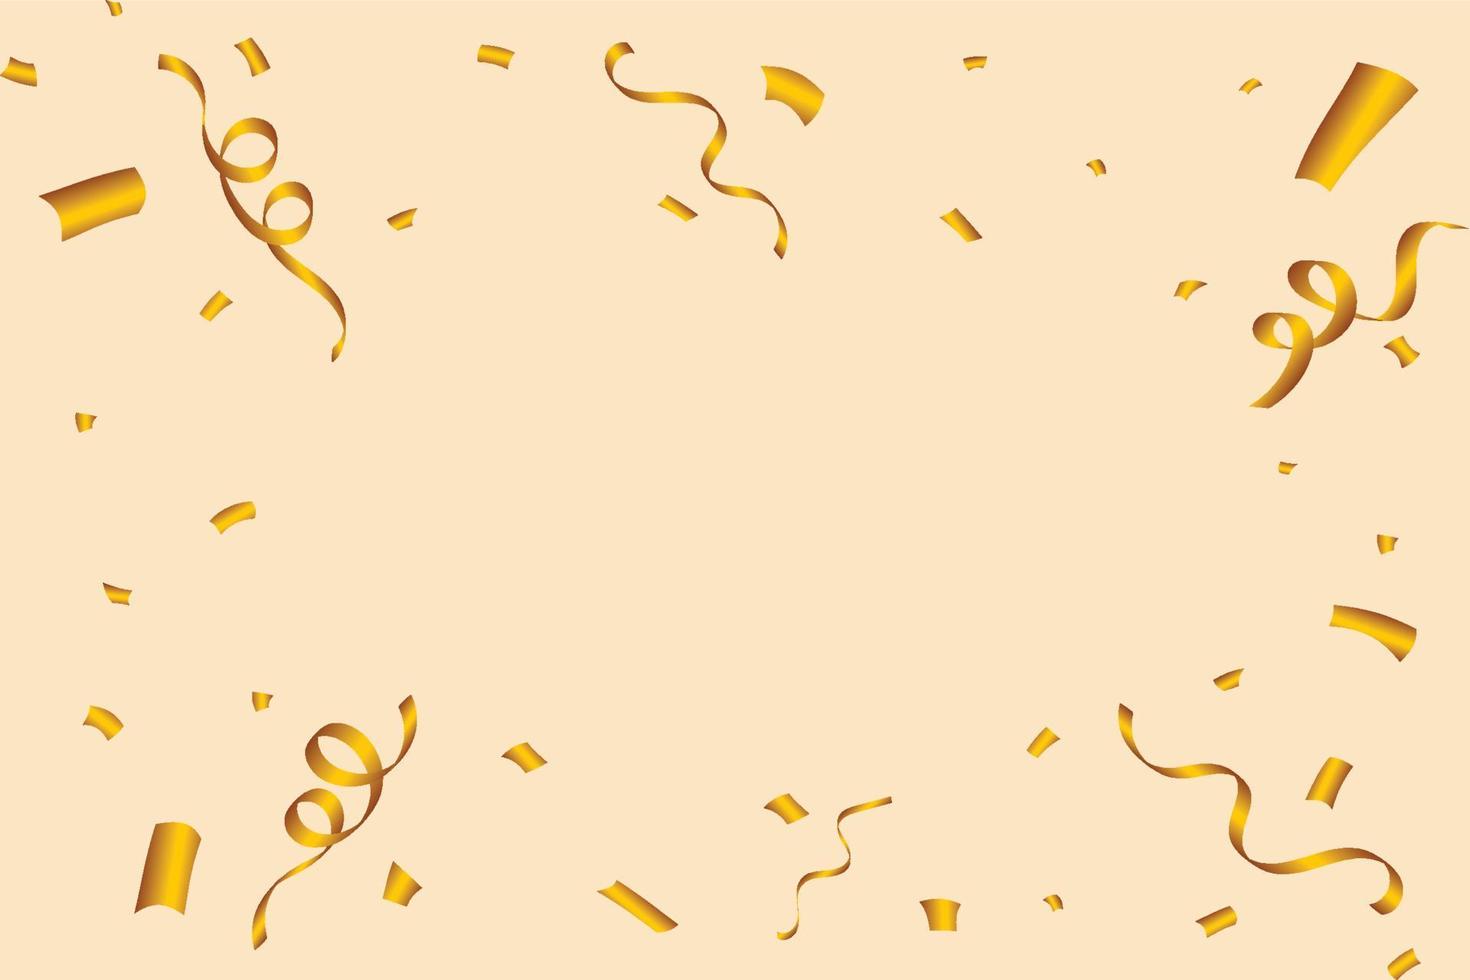 gyllene konfetti explosion isolerad på en guld bakgrund. gyllene festglitter och konfetti fotoram. jubileumsfirande. konfetti vektor för karneval bakgrund. festivalinslag.